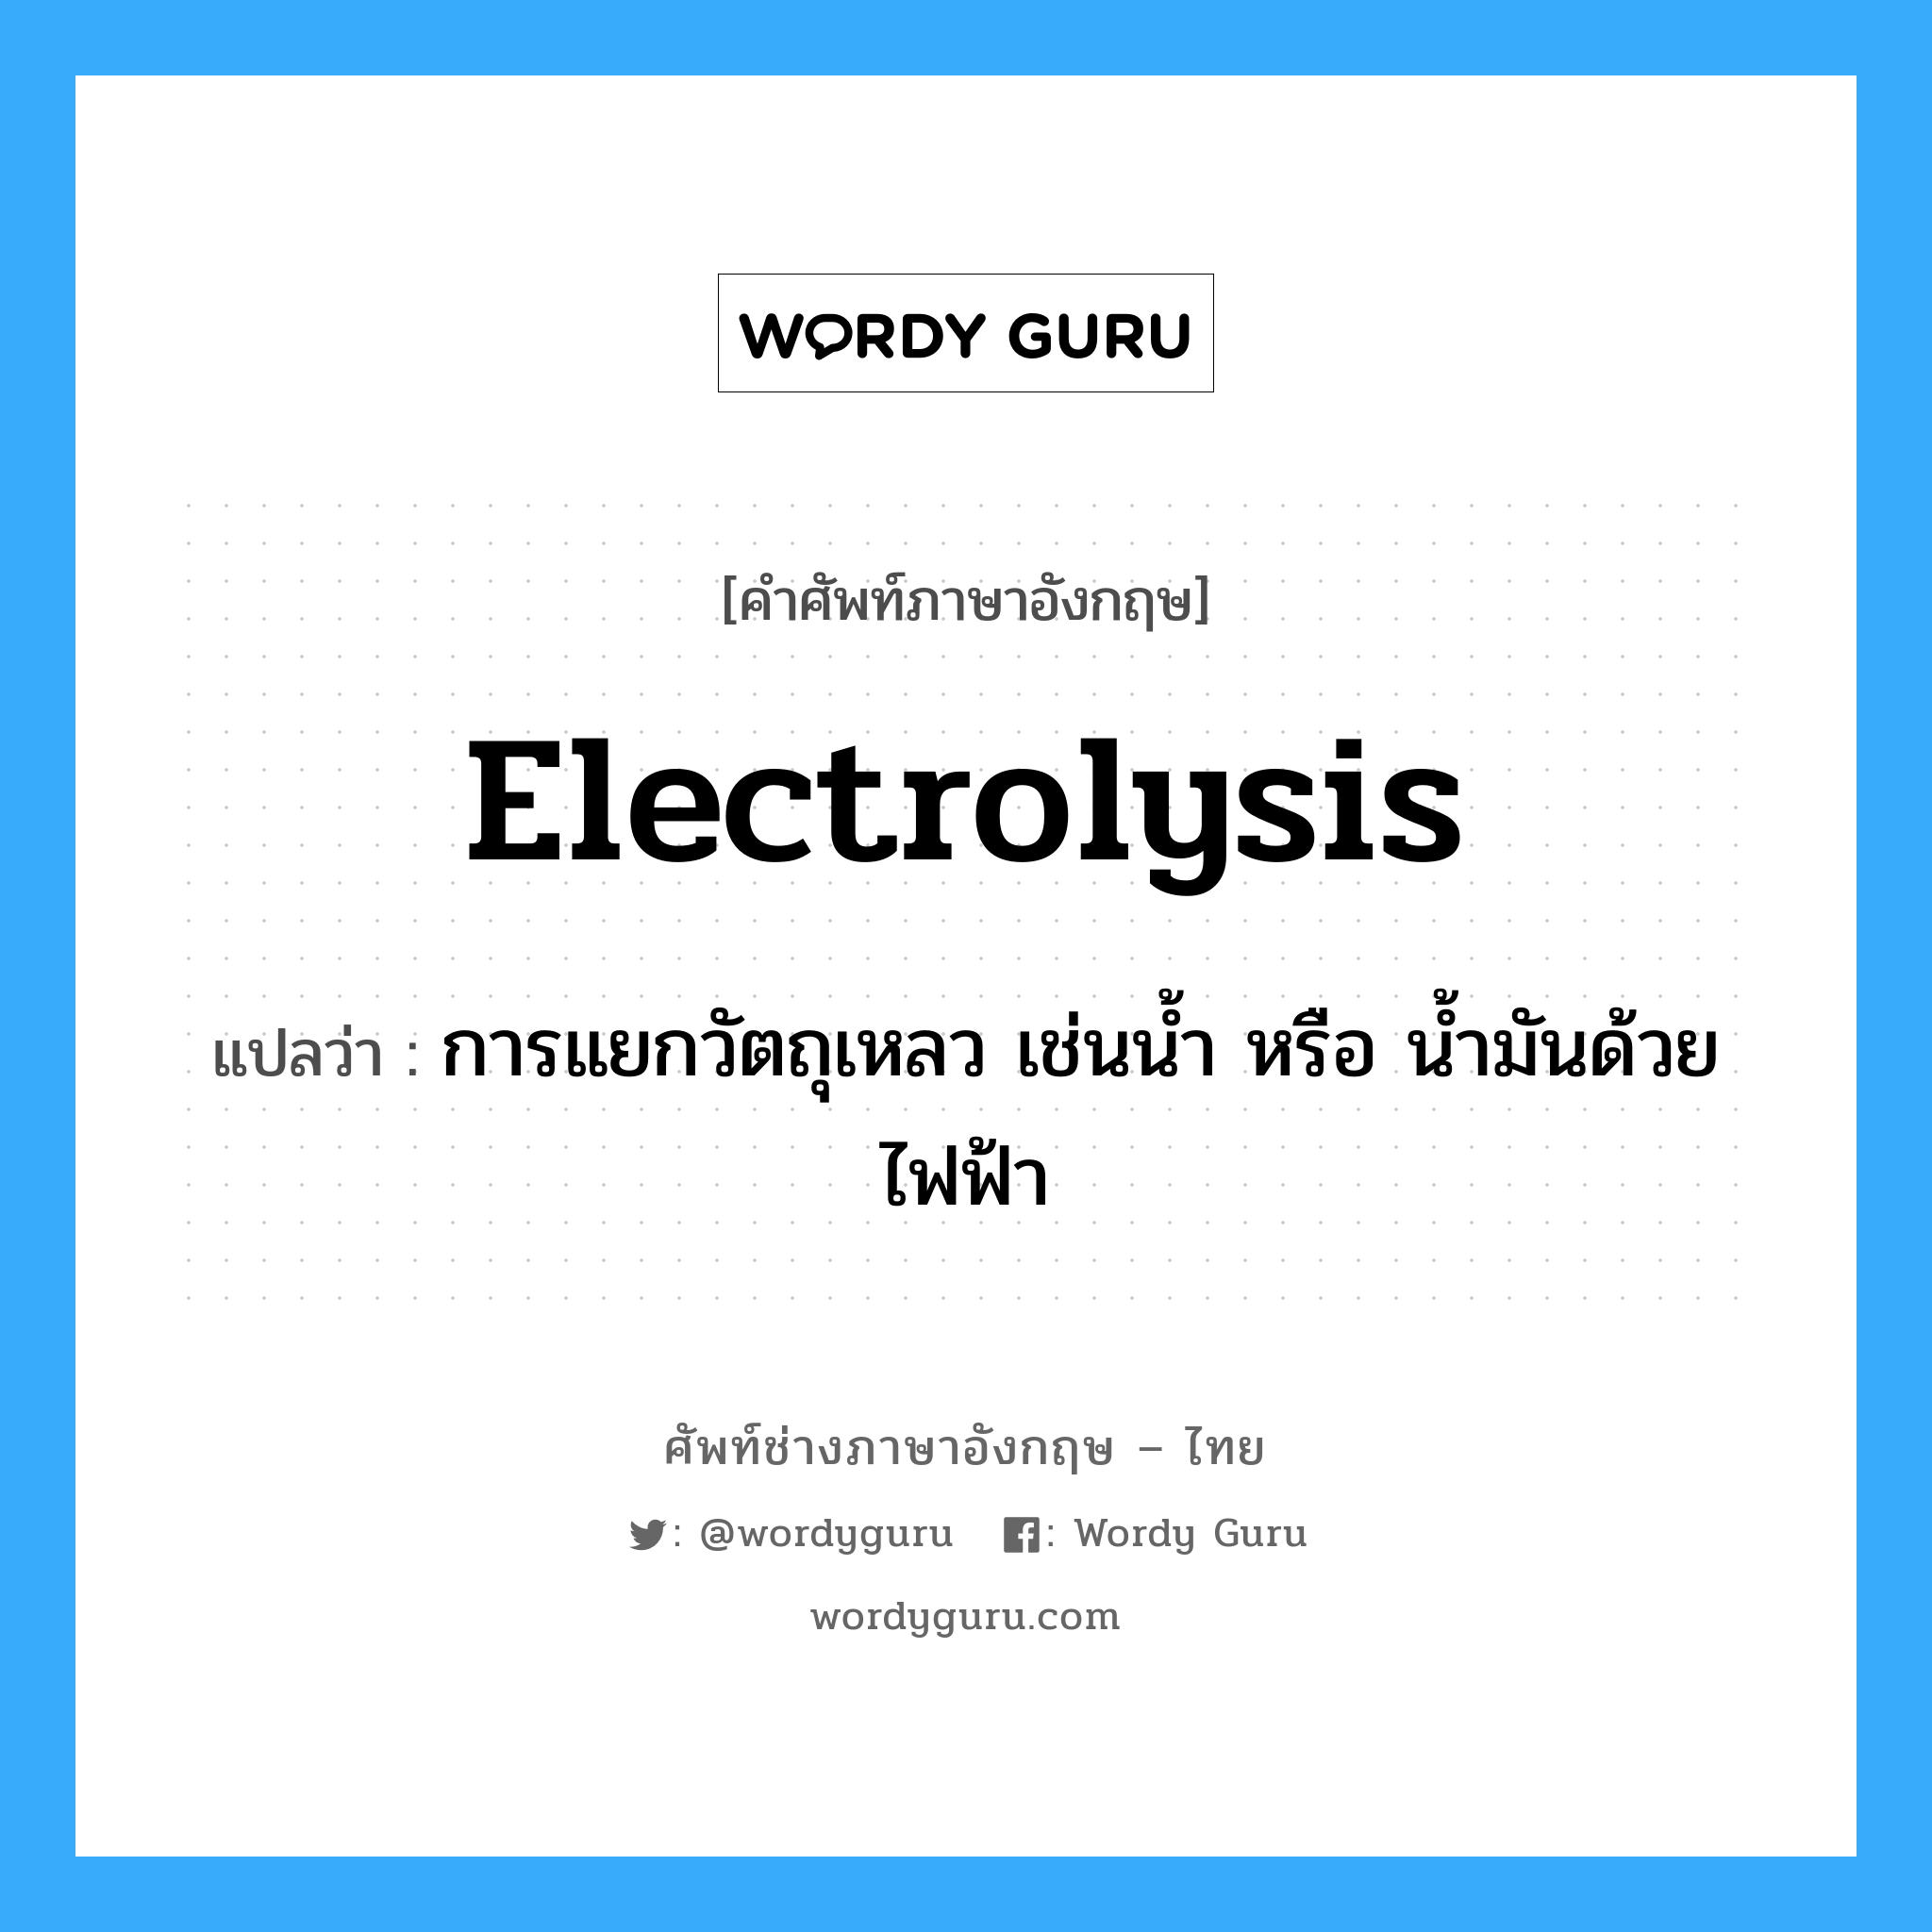 electrolysis แปลว่า?, คำศัพท์ช่างภาษาอังกฤษ - ไทย electrolysis คำศัพท์ภาษาอังกฤษ electrolysis แปลว่า การแยกวัตถุเหลว เช่นน้ำ หรือ น้ำมันด้วยไฟฟ้า